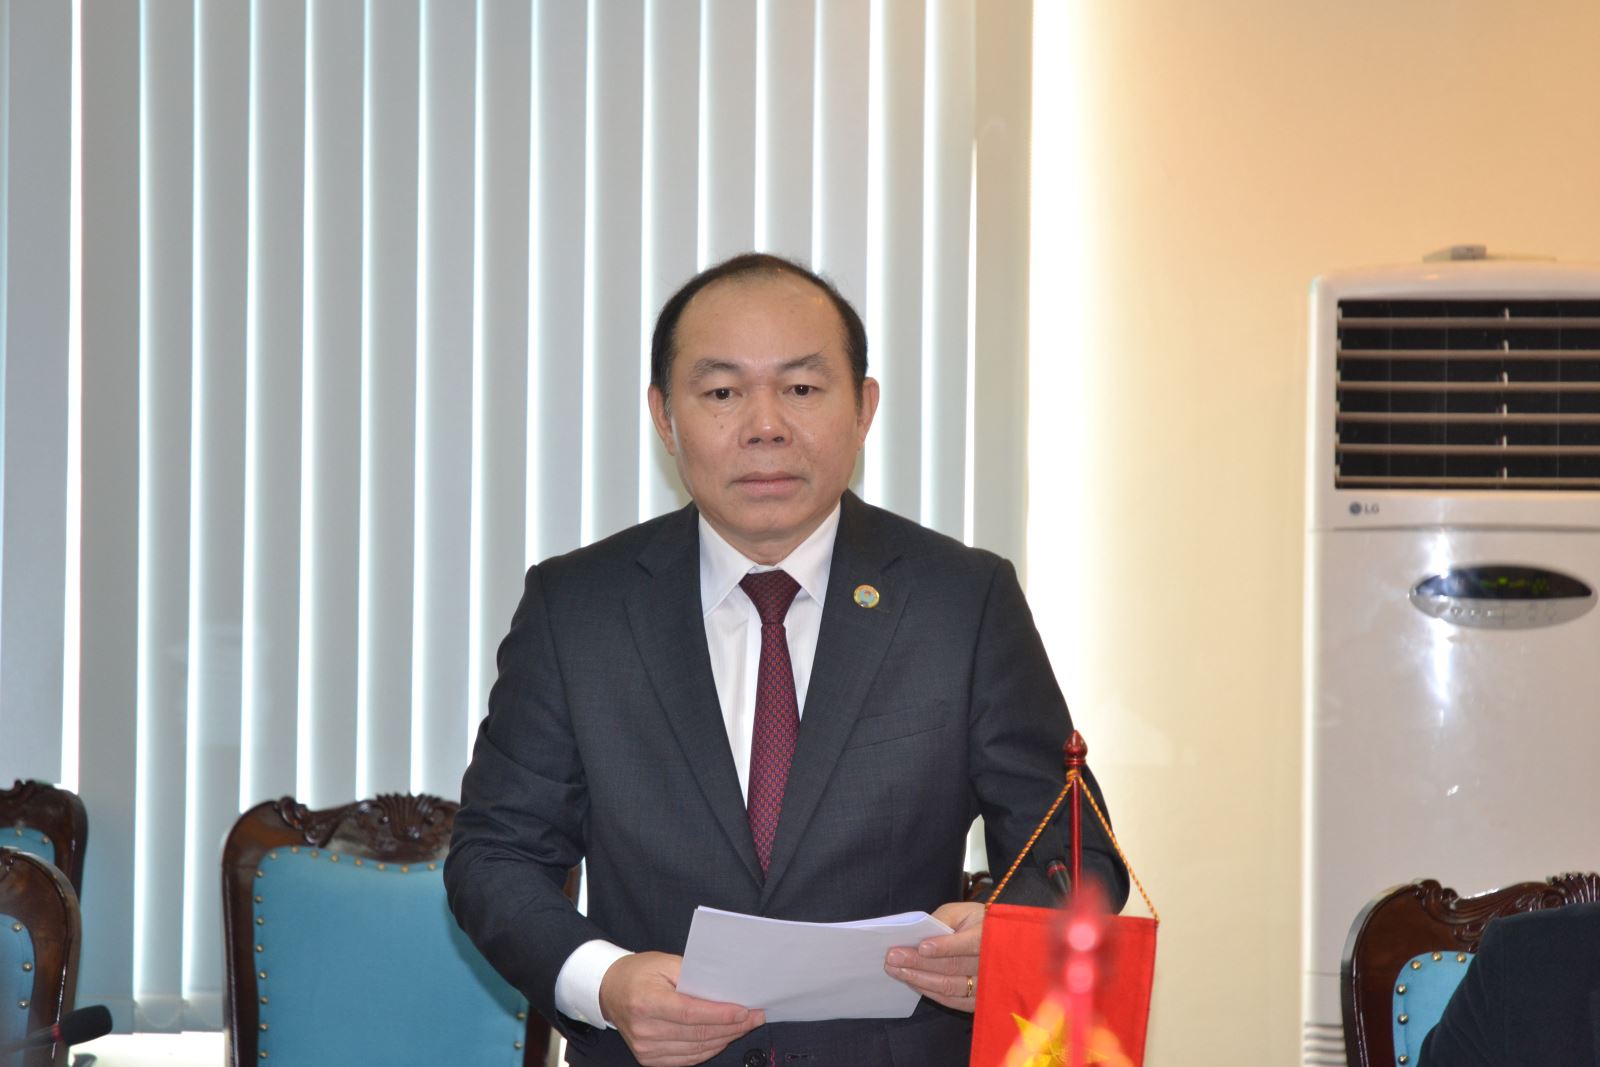 Ông Nguyễn Ngọc Bảo - Chủ tịch Liên minh HTX Việt Nam